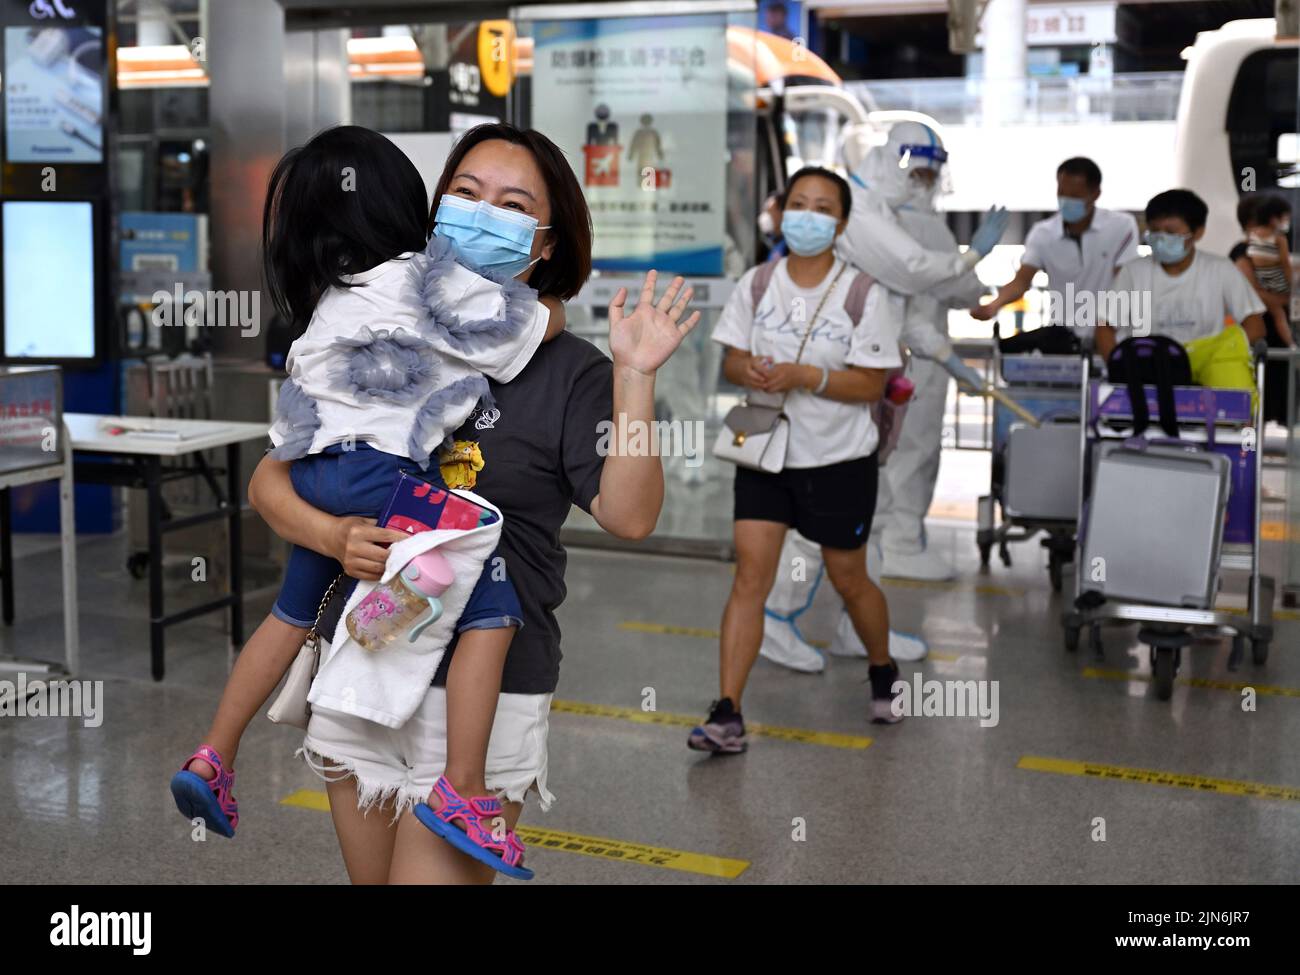 (220809) -- SANYA, 9 de agosto de 2022 (Xinhua) -- Turistas varados se preparan para abordar su vuelo en el Aeropuerto Internacional Sanya Phoenix en Sanya, en la provincia de Hainan, al sur de China, el 9 de agosto de 2022. El primer lote de 125 turistas varados en Sanya debido al último resurgimiento de COVID-19 han volado a Xi'an el martes. Las autoridades de Hainan han tomado medidas para organizar viajes de regreso para turistas varados que cumplan con requisitos específicos de control epidémico. (Xinhua/Guo Cheng) Foto de stock